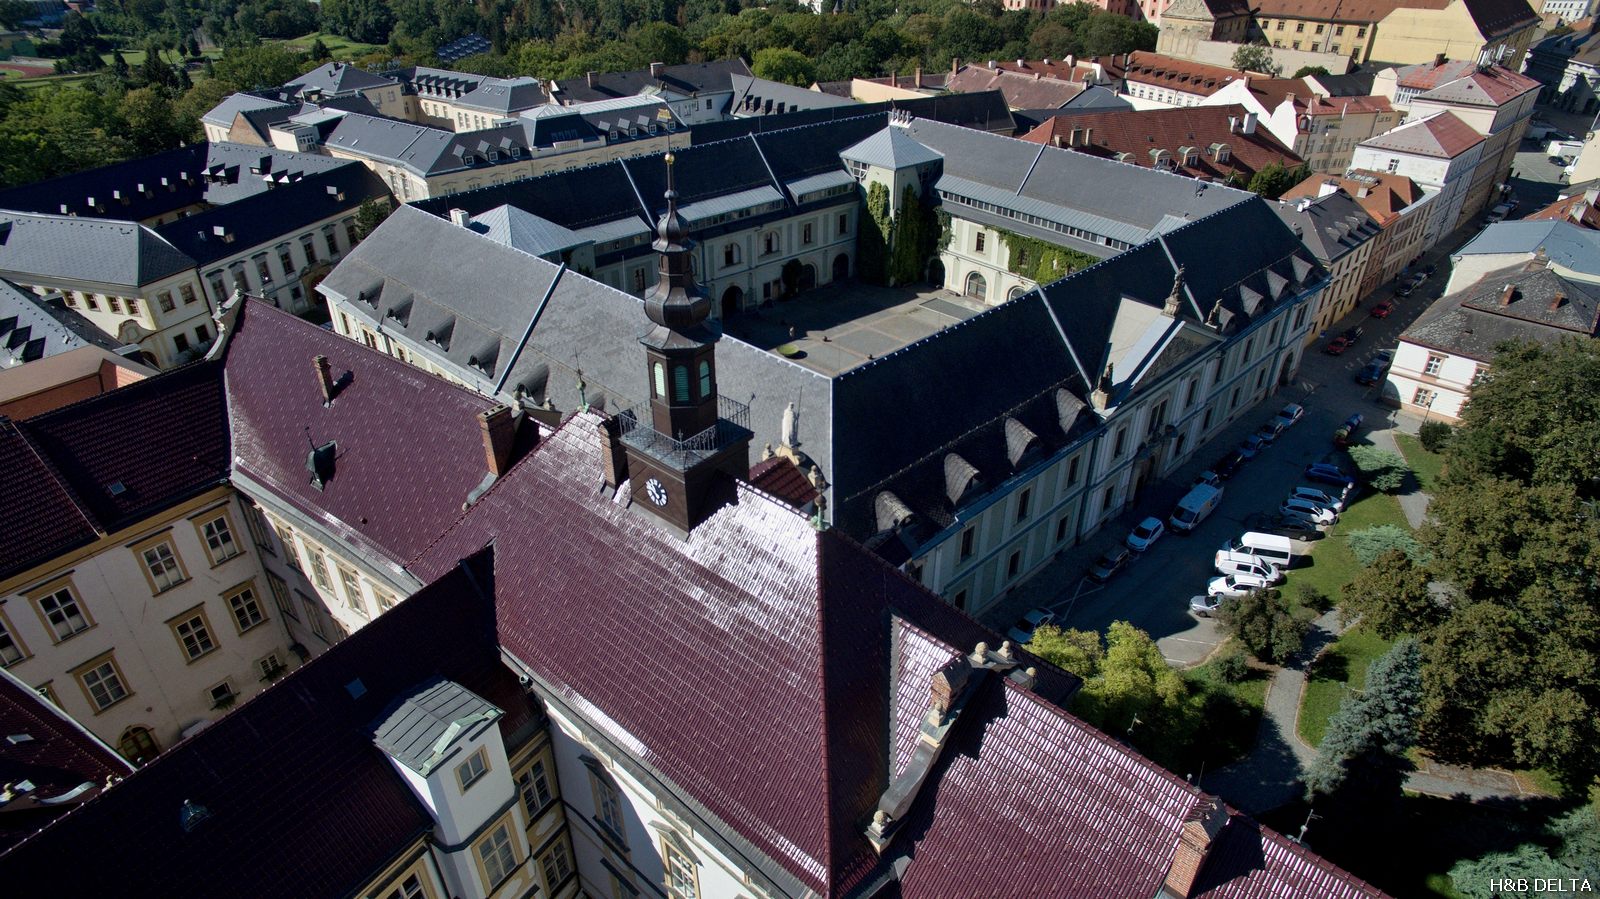 Arcibiskupský palác Olomouc